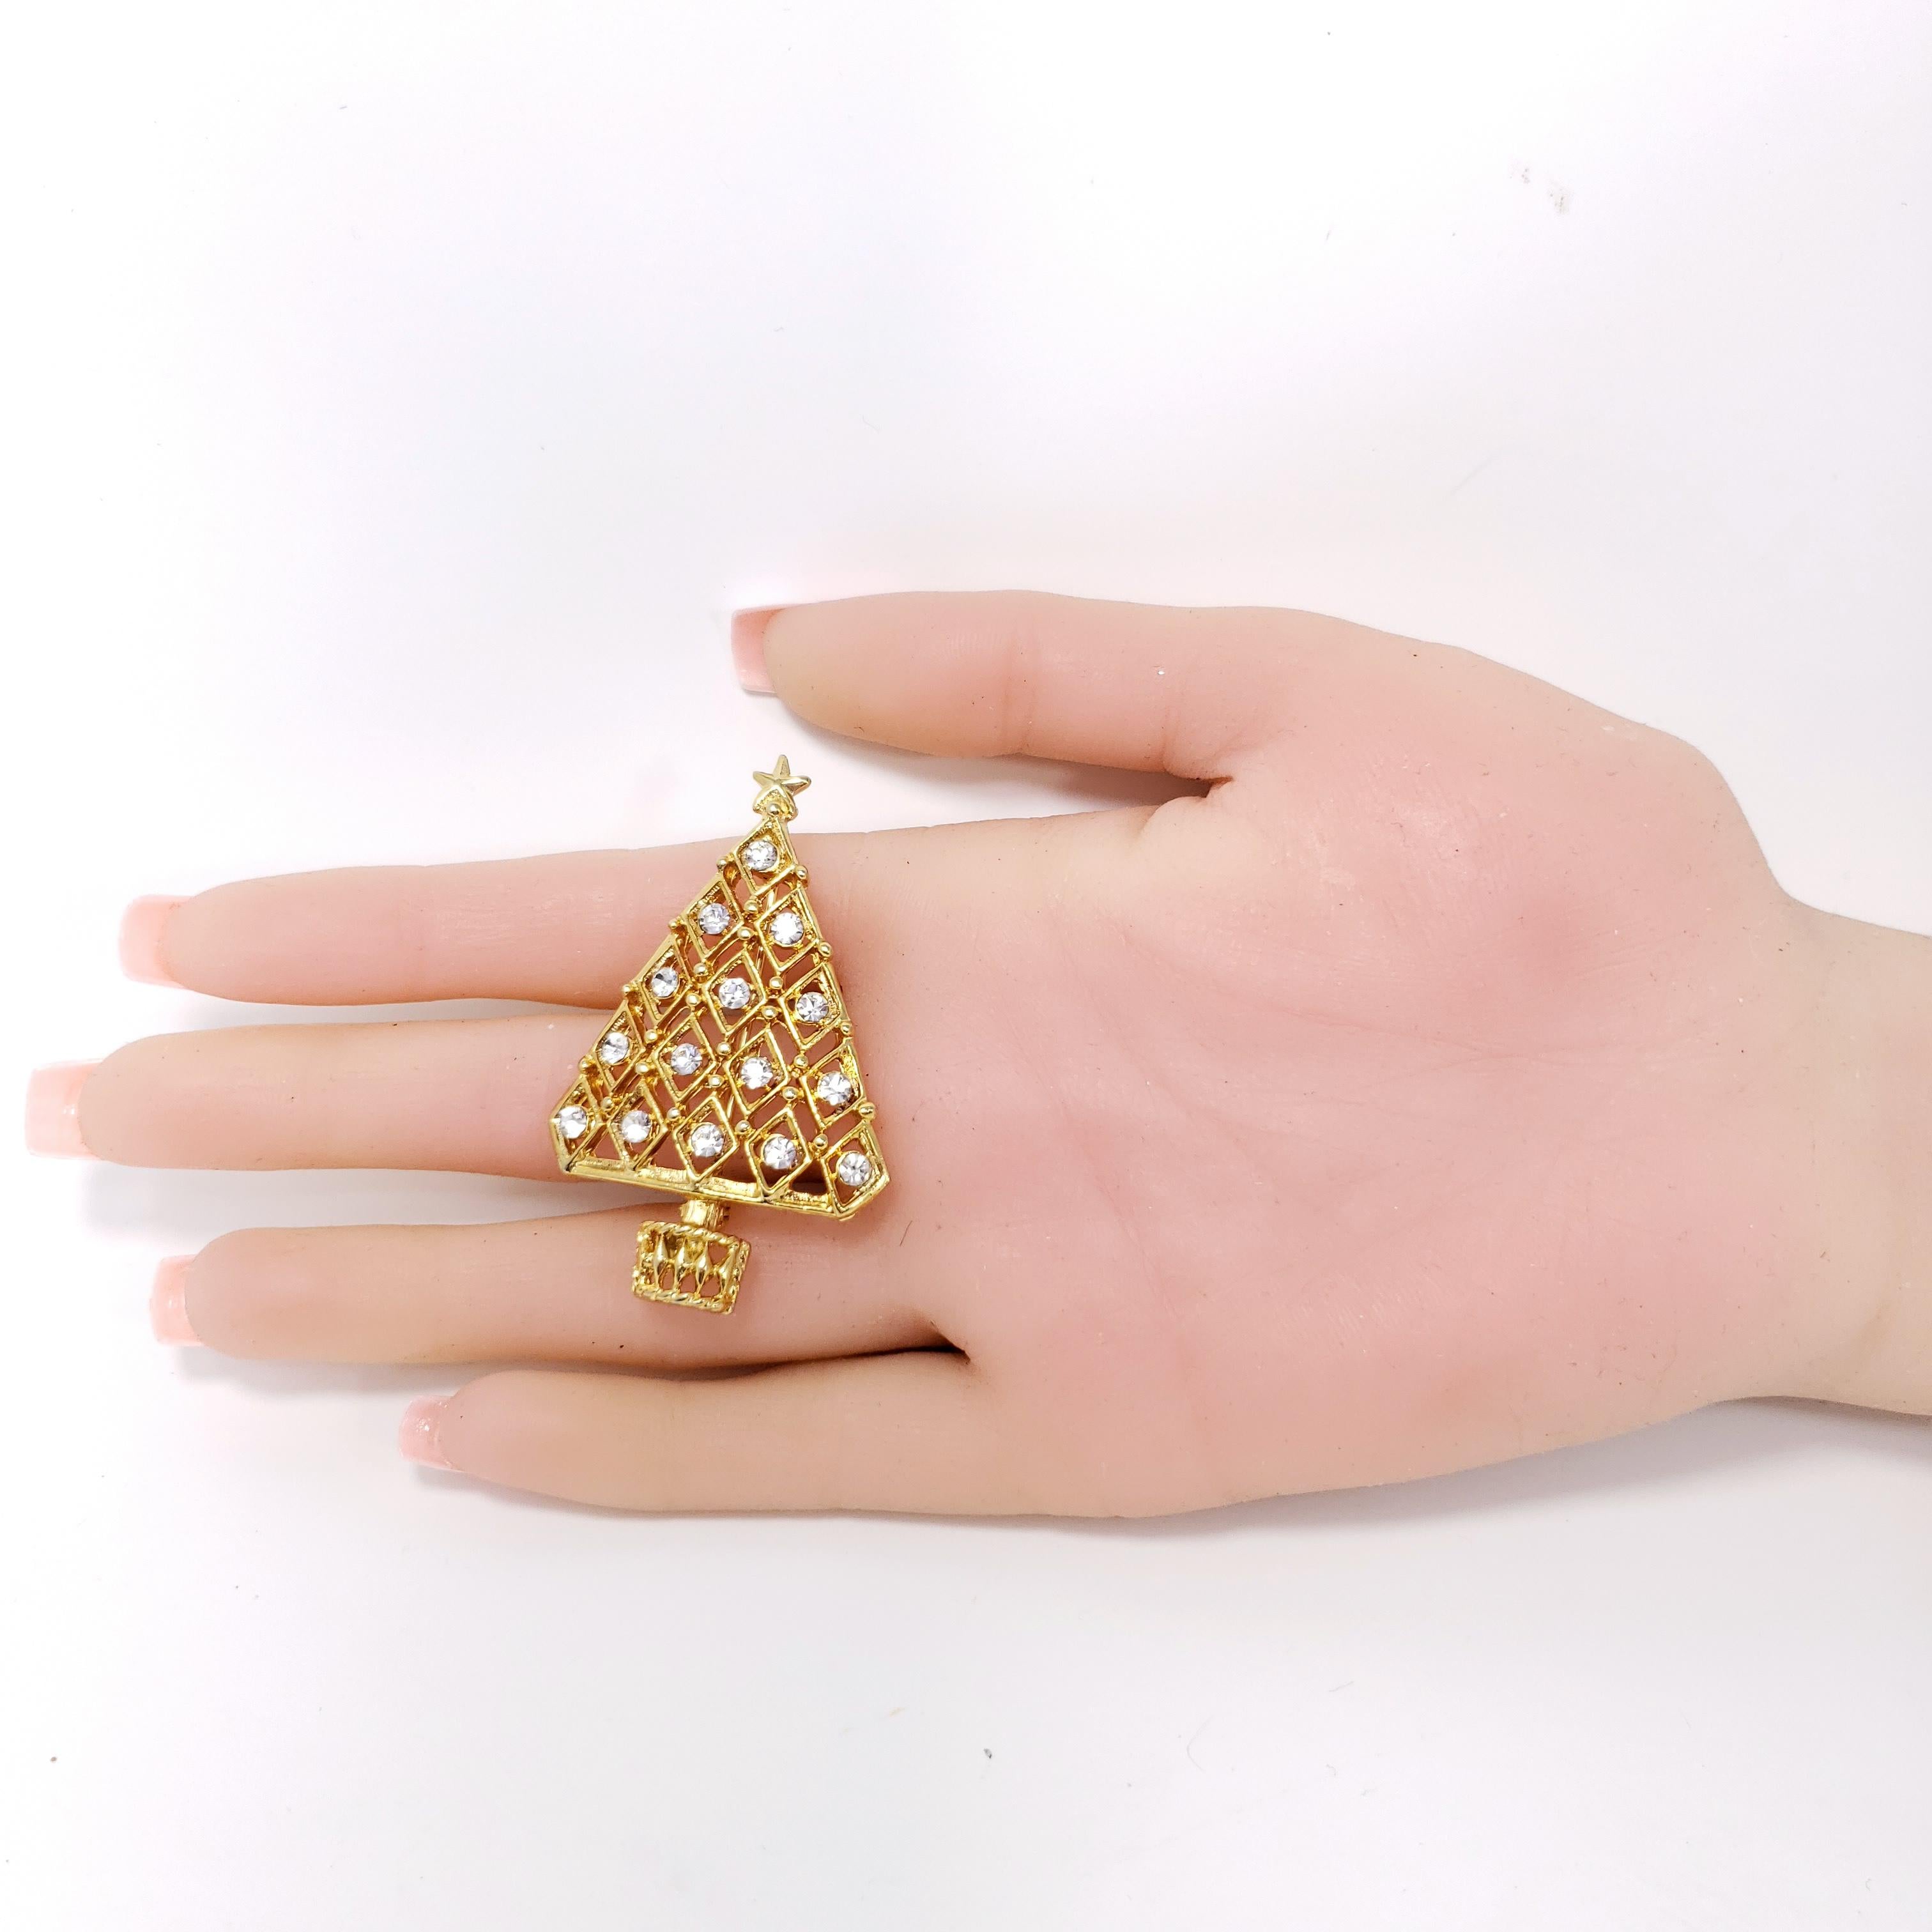 Retro Gold Christmas Tree Fashion Pin Brooch